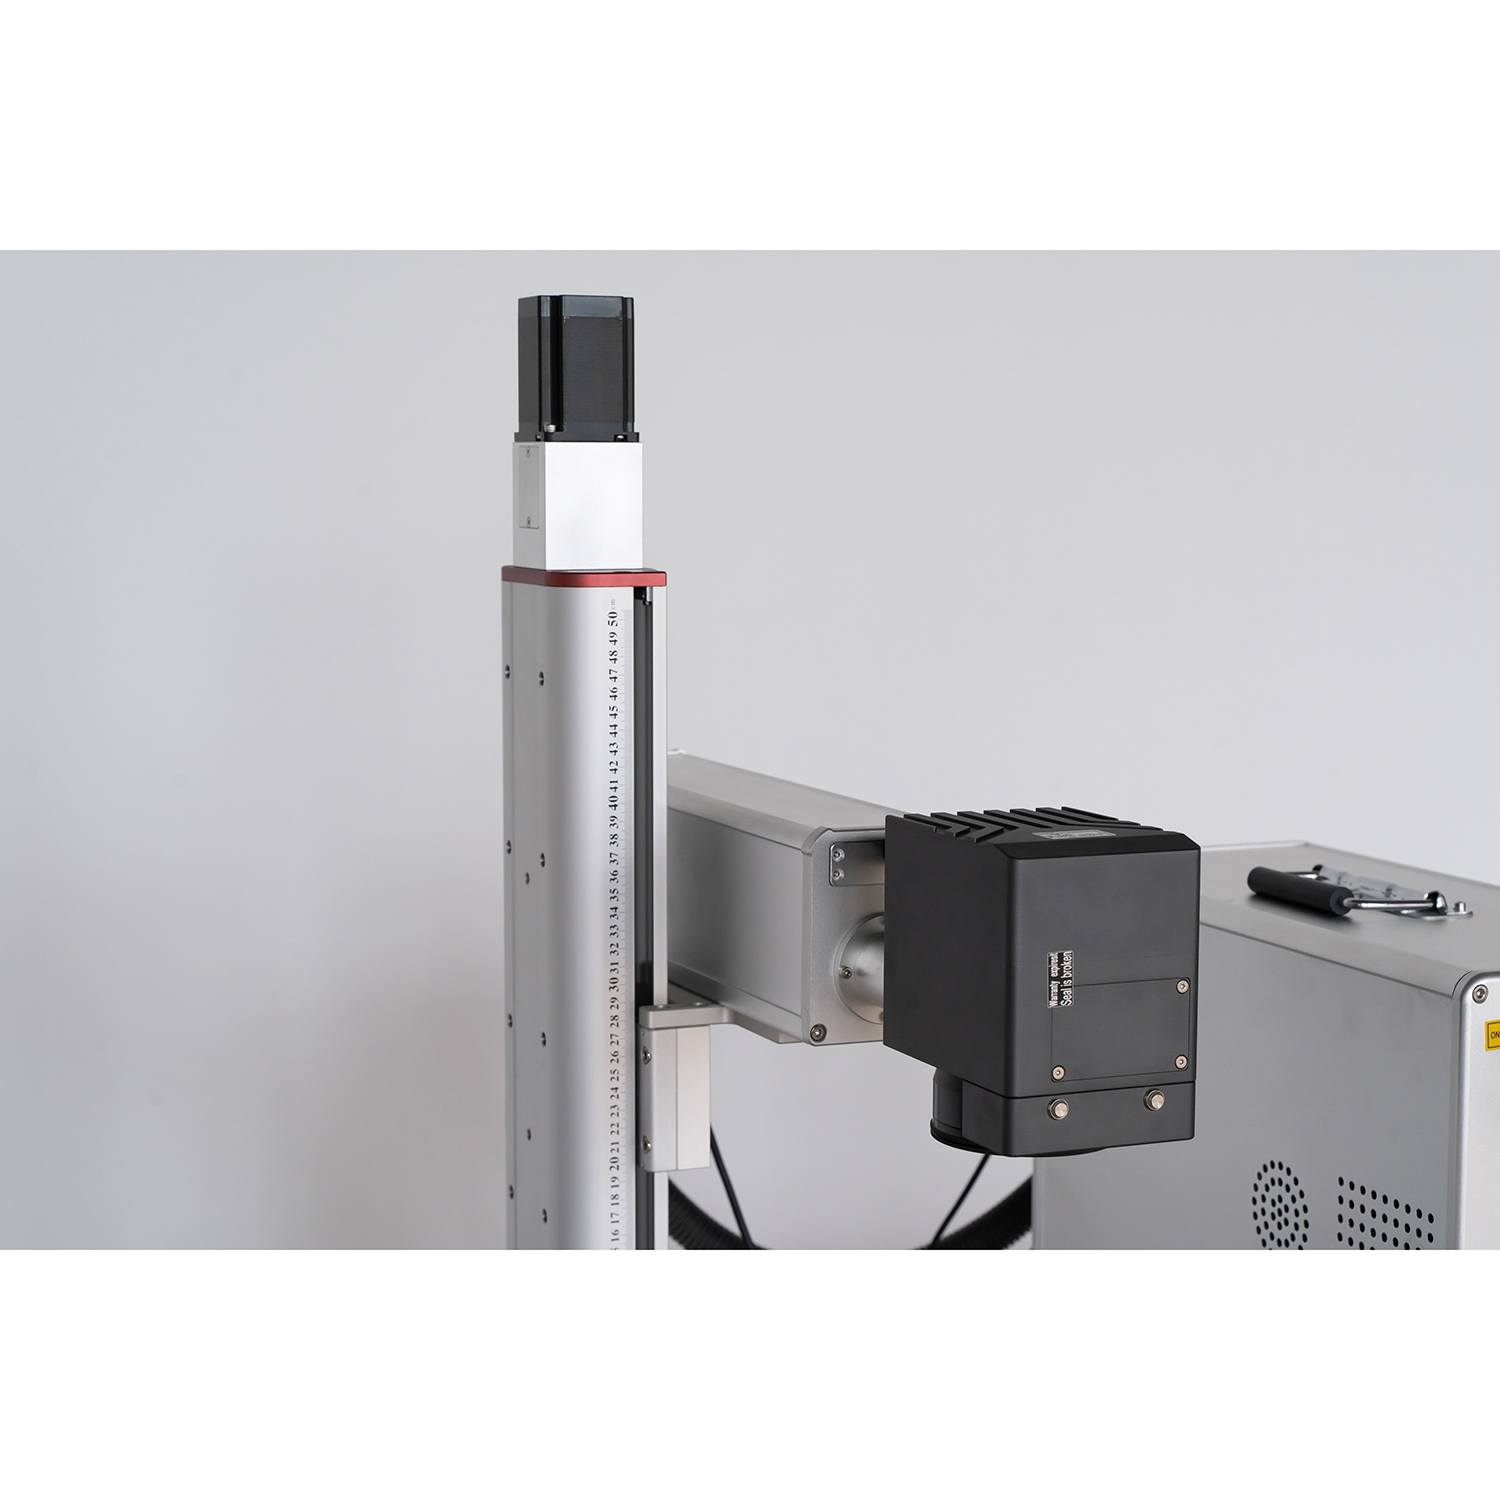 Ново позиционирање камере и позадински дисплеј Машина за ласерско гравирање влакнима за сечење за металну пластику